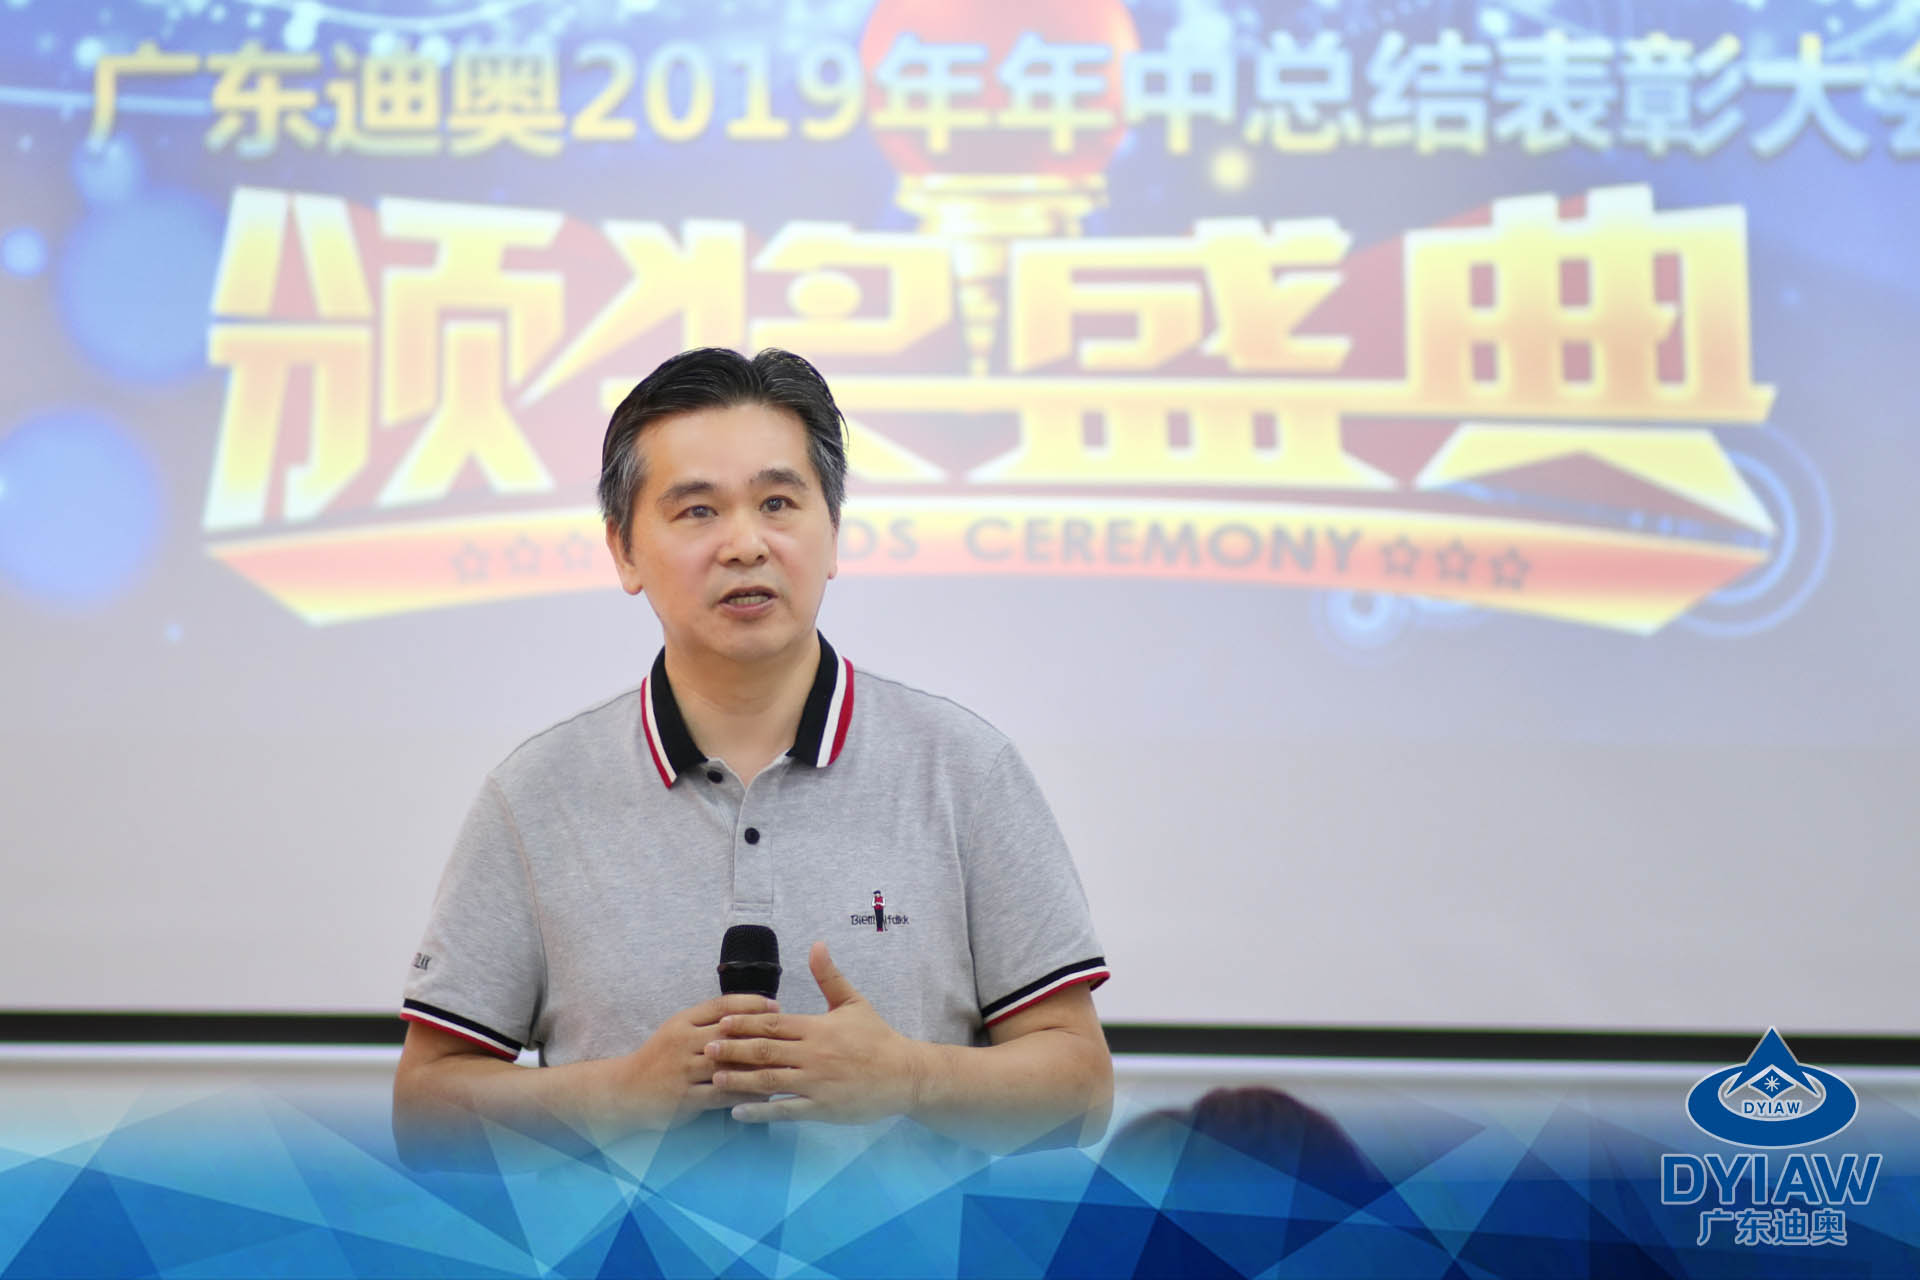 广东迪奥技术有限公司2019年年中总结大会及团队建设活动